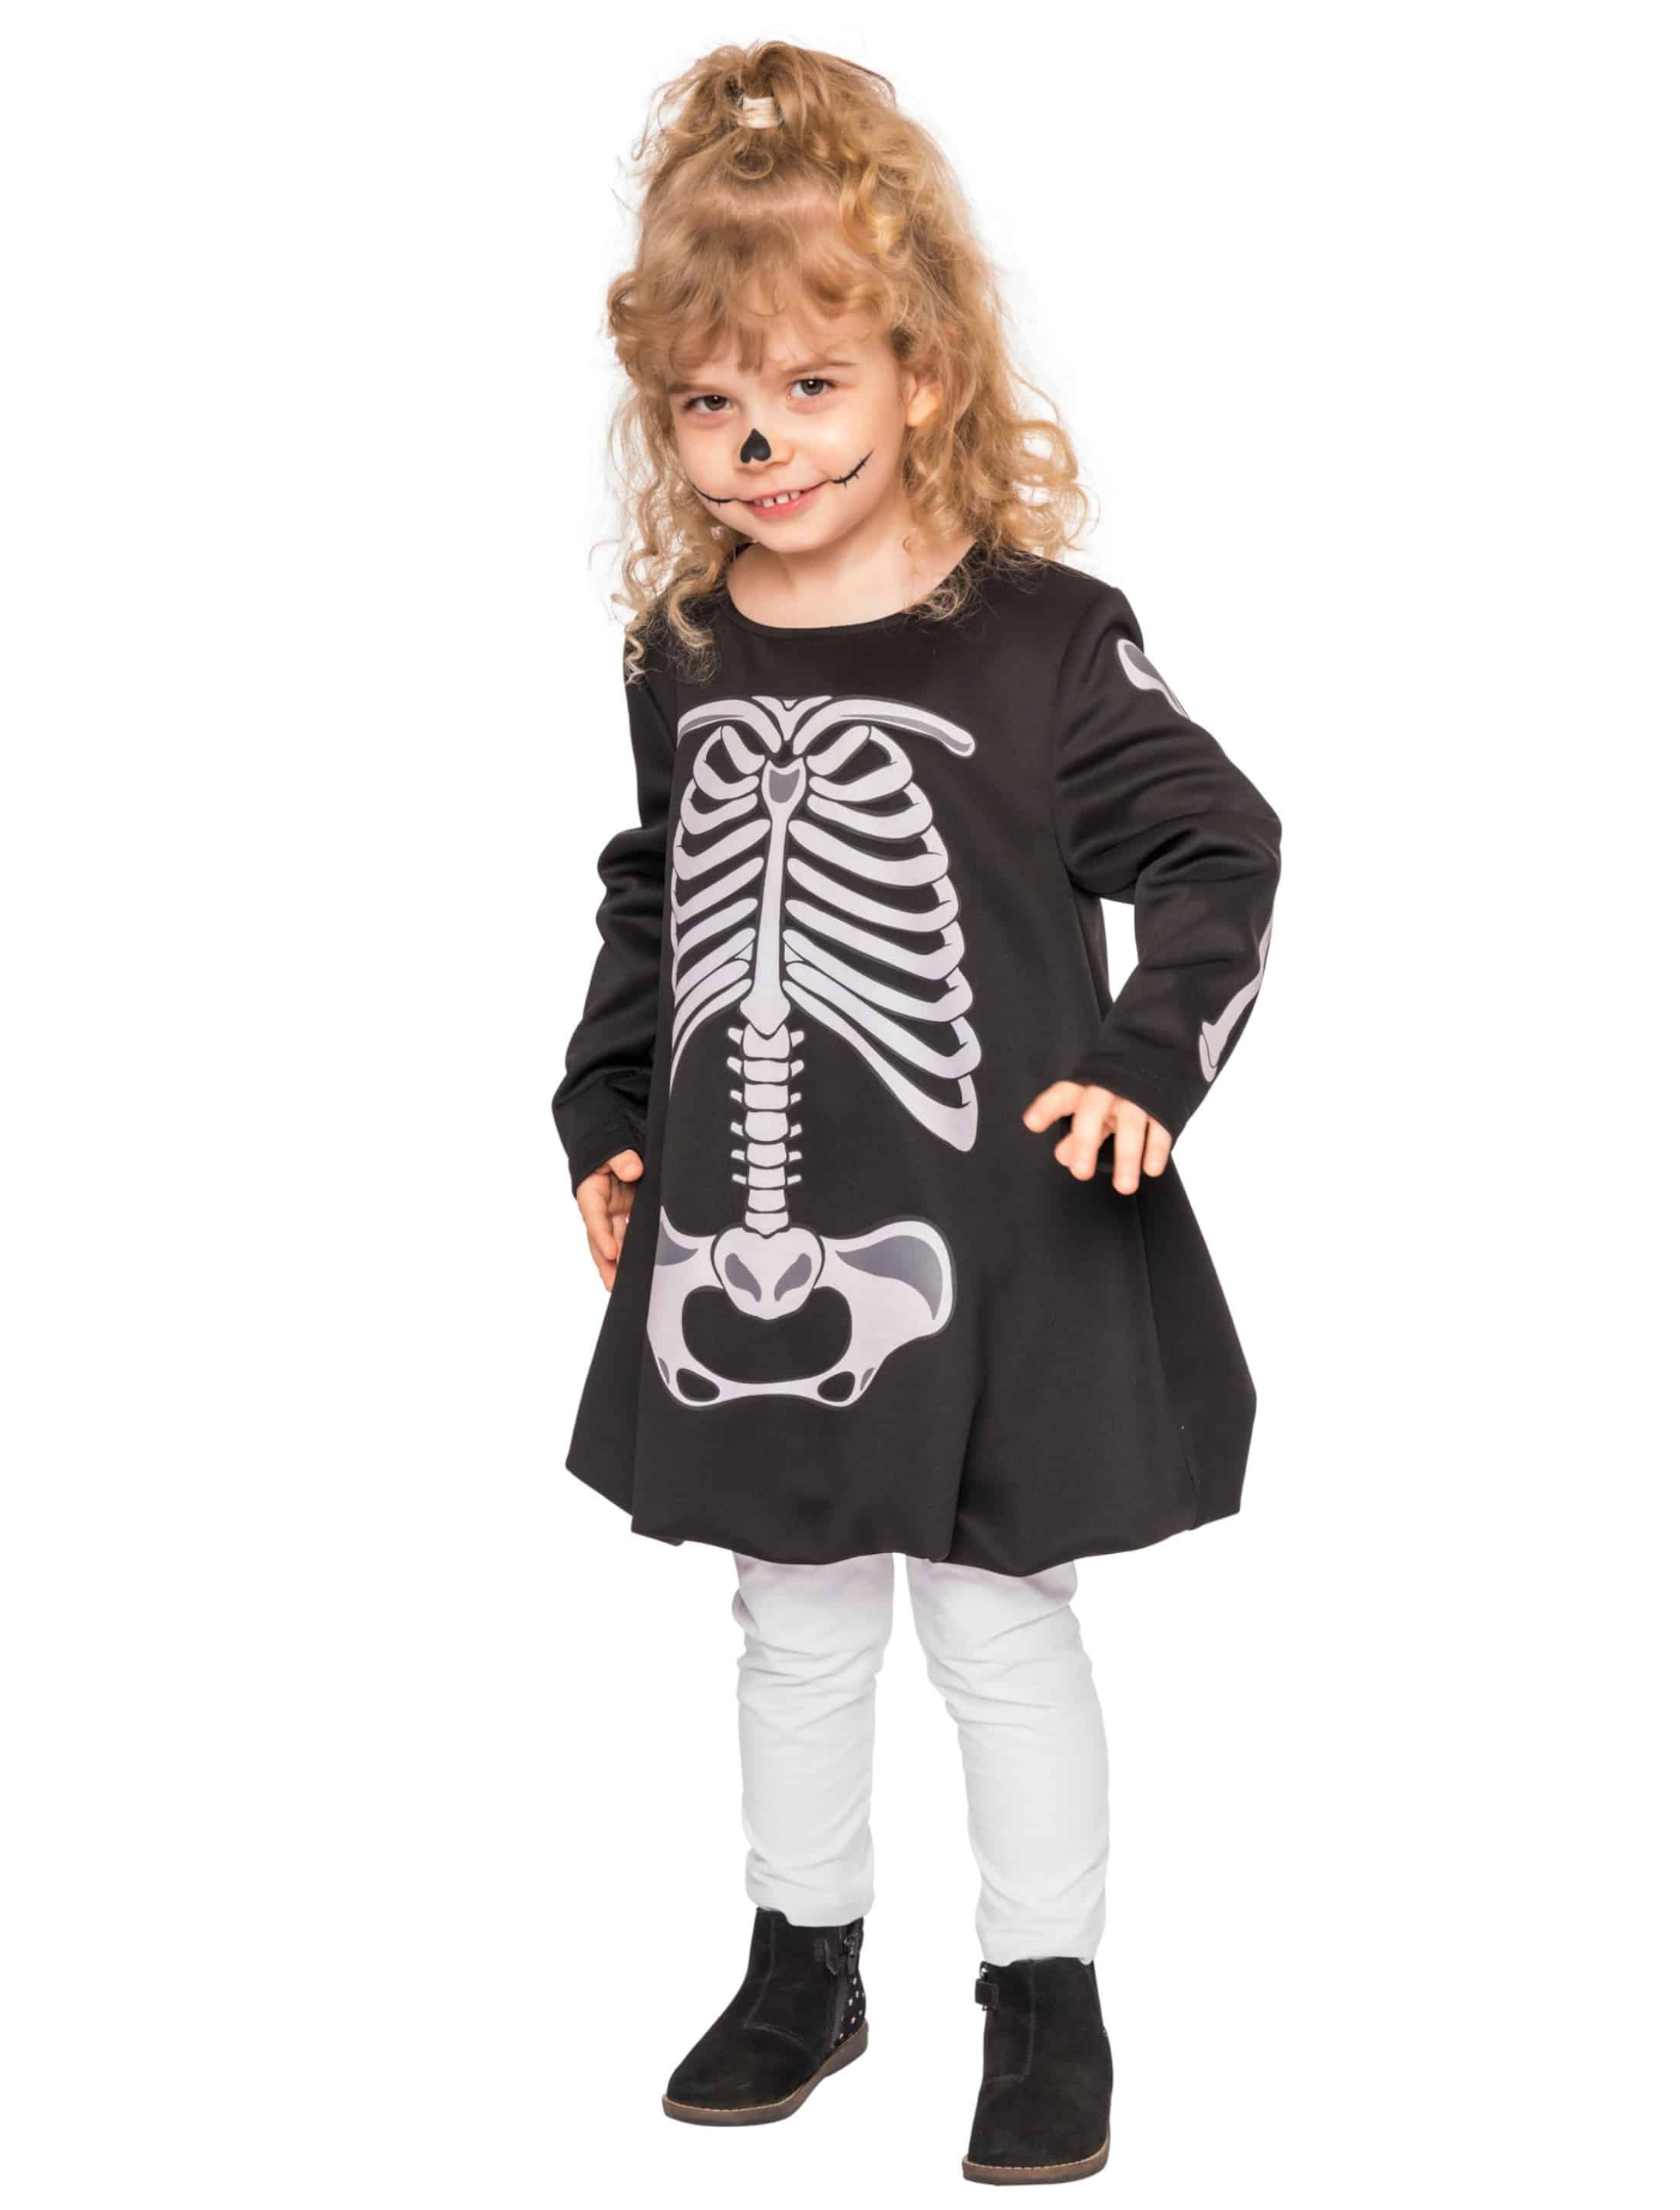 Kleid mit Knochen Kinder schwarz/weiß 86